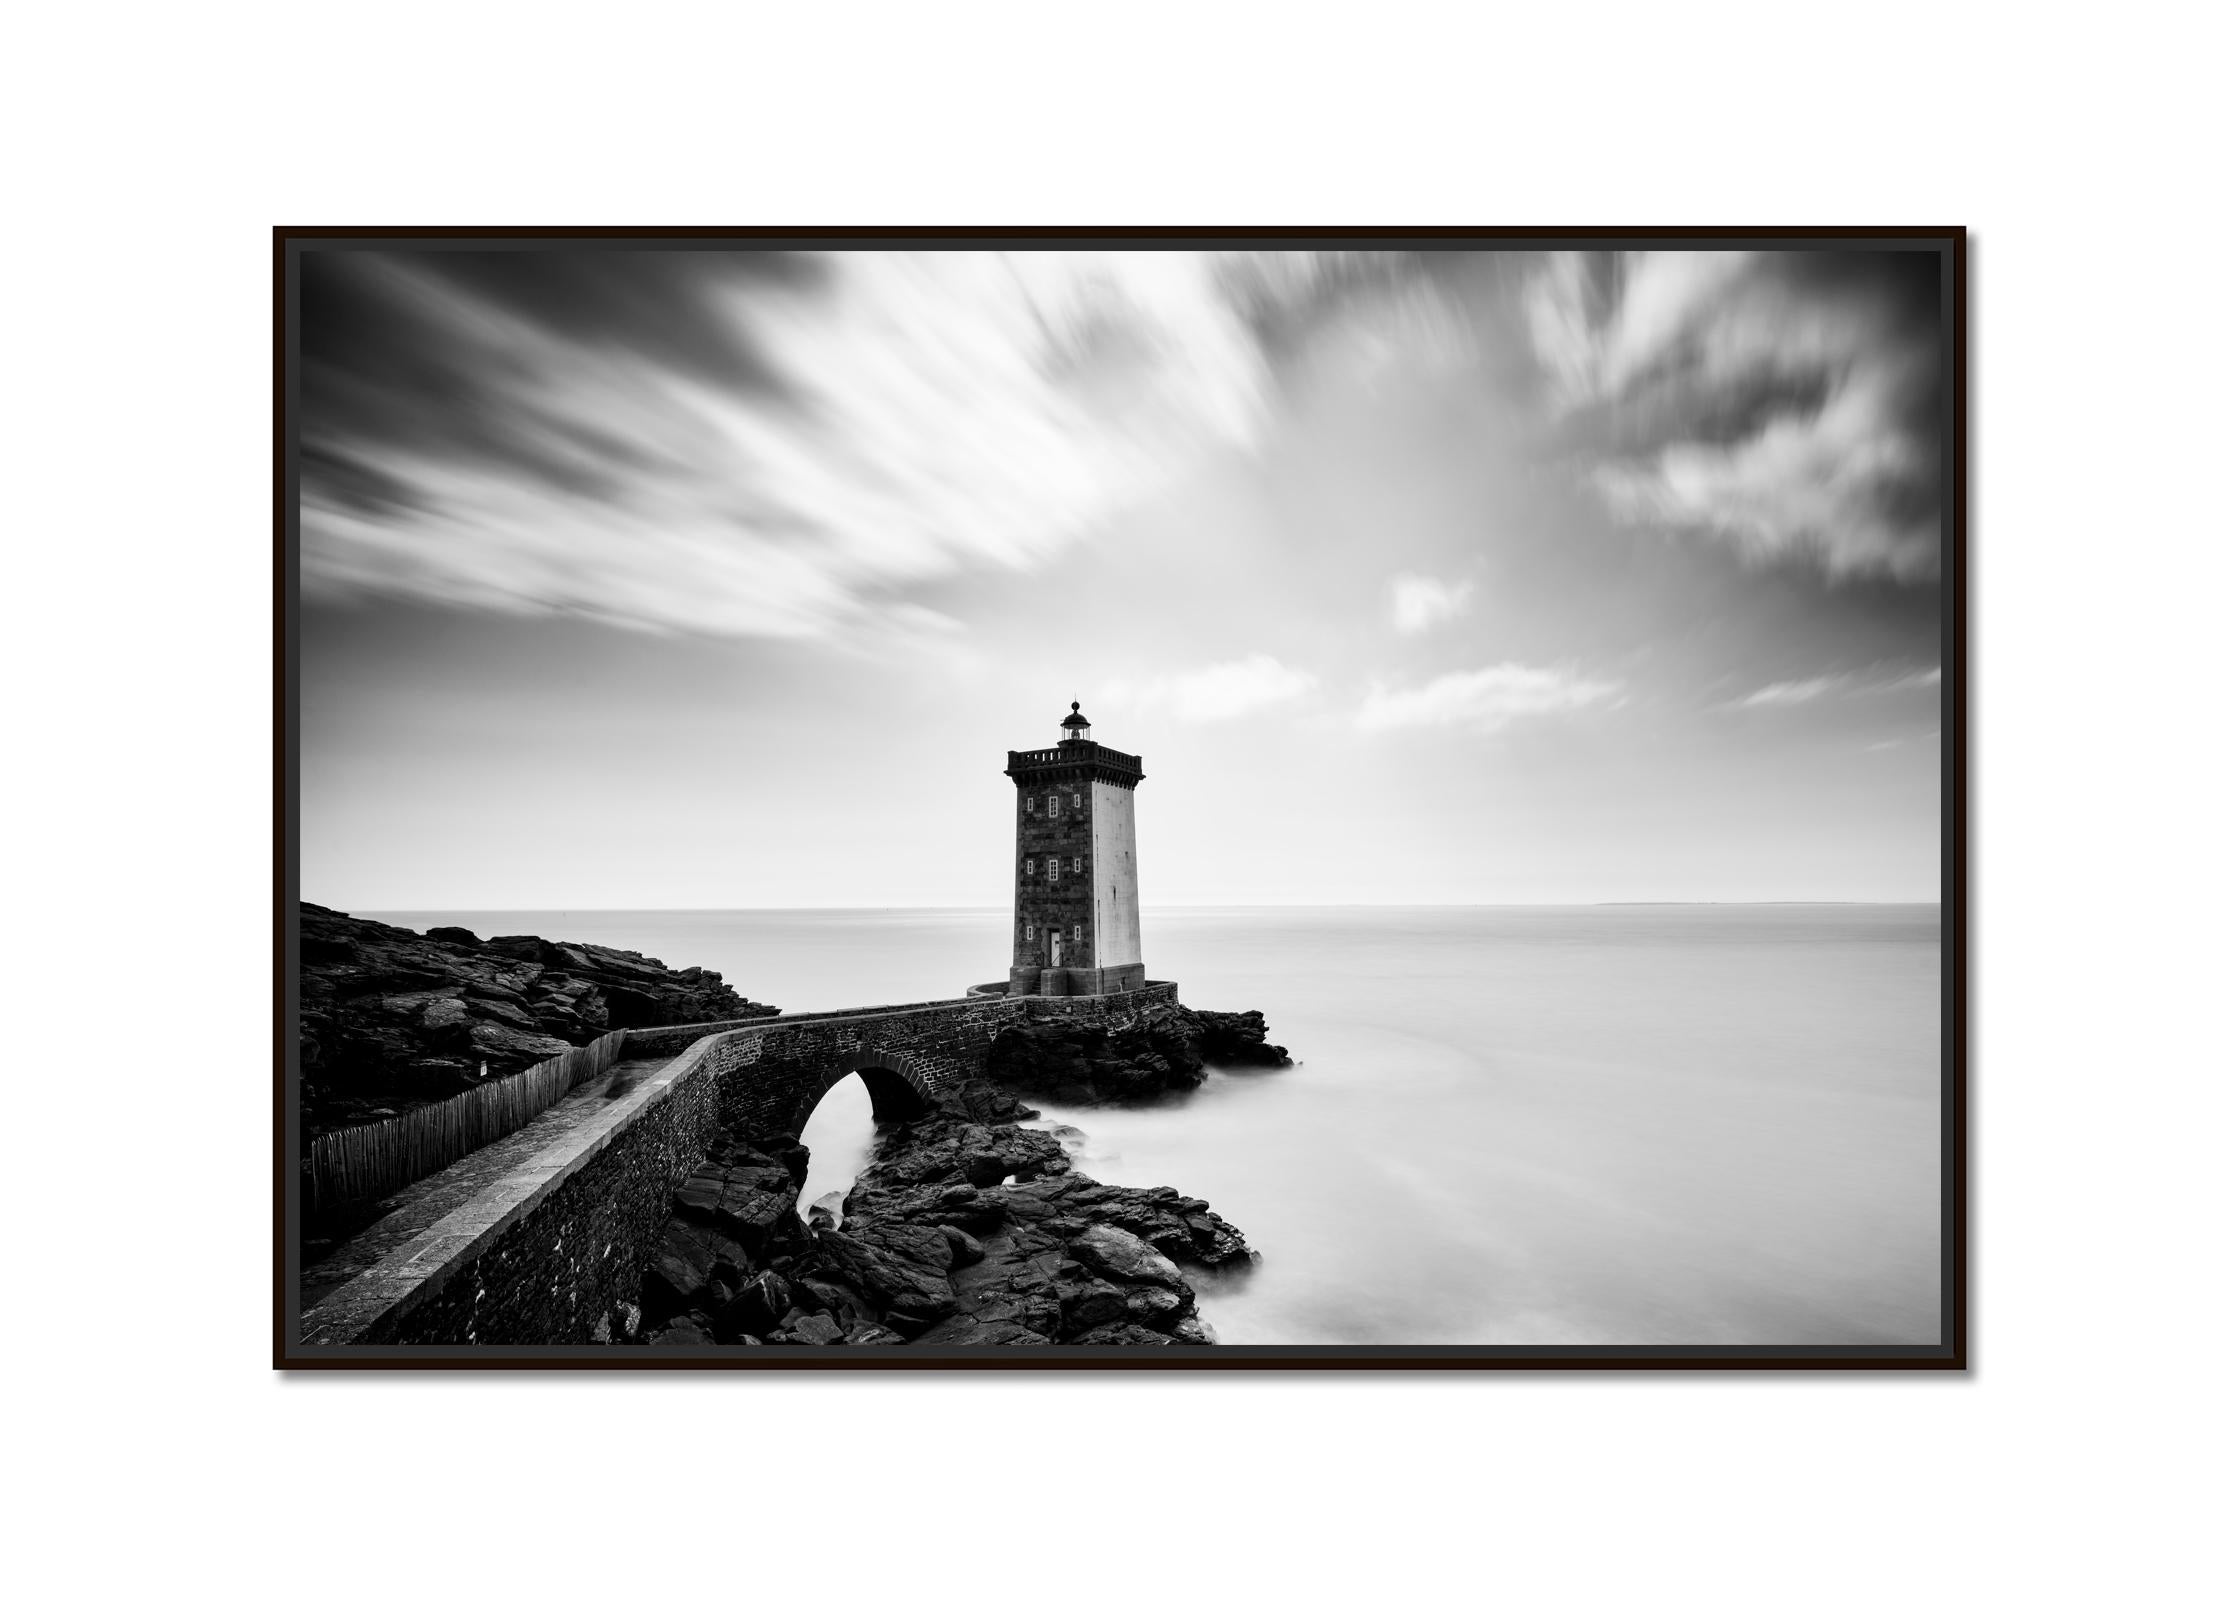 Leuchtturm, Kermorvan, Atlantik, Frankreich, schwarz-weiß Landschaftsfotografie – Photograph von Gerald Berghammer